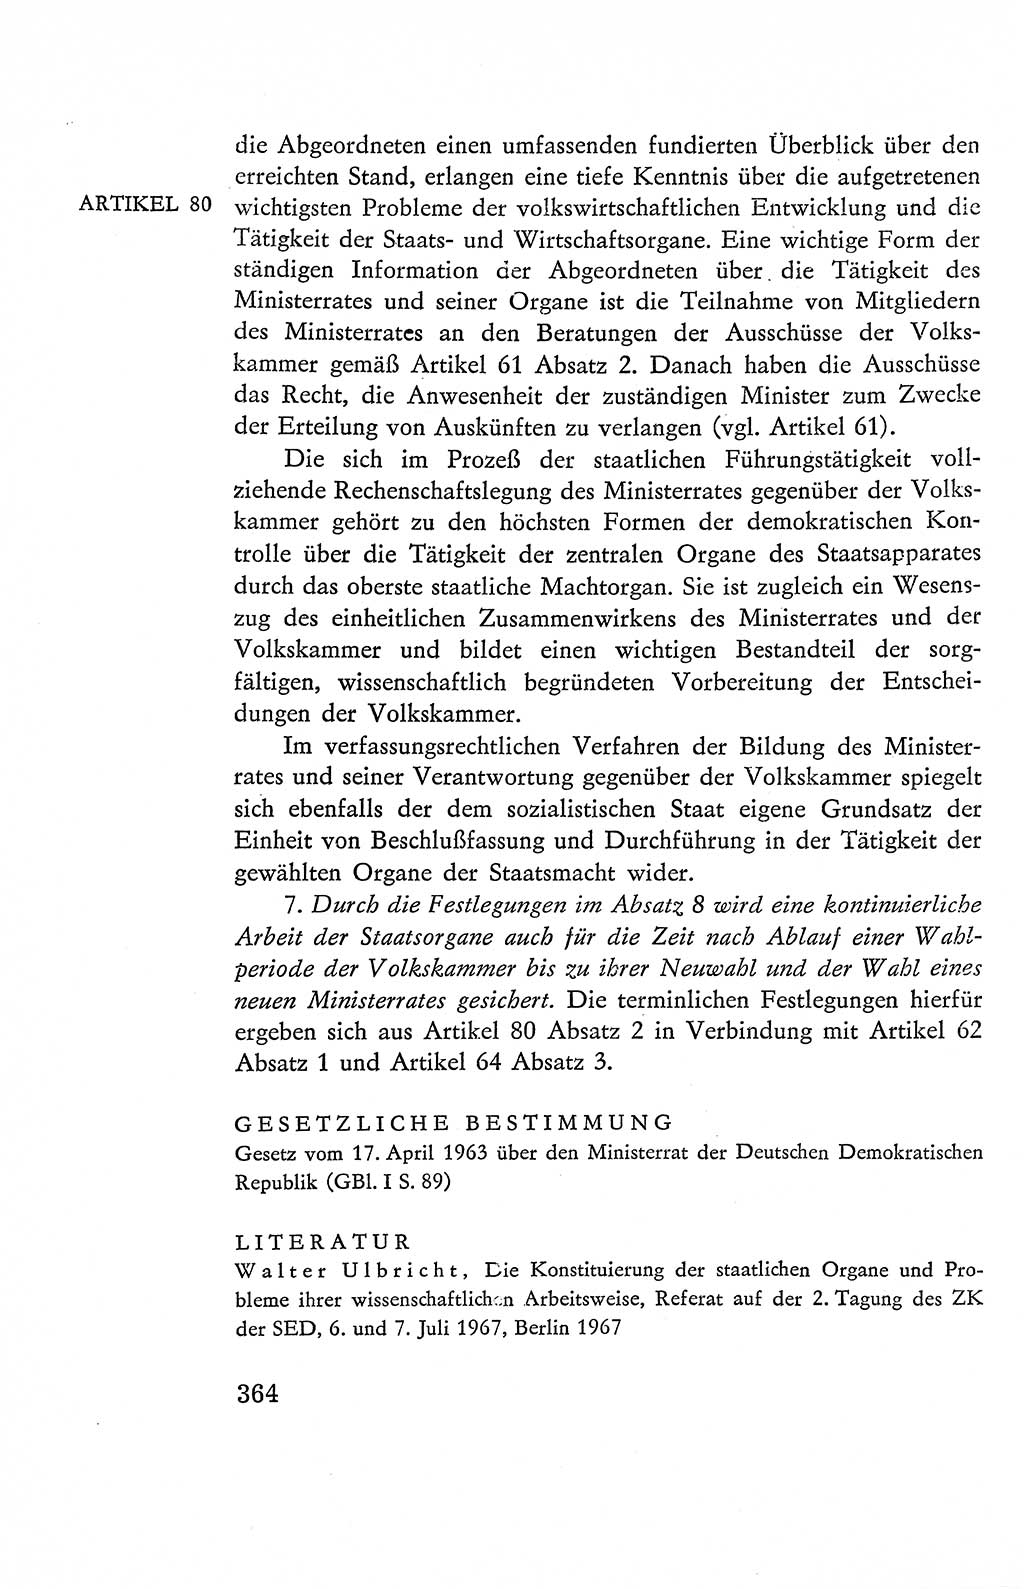 Verfassung der Deutschen Demokratischen Republik (DDR), Dokumente, Kommentar 1969, Band 2, Seite 364 (Verf. DDR Dok. Komm. 1969, Bd. 2, S. 364)